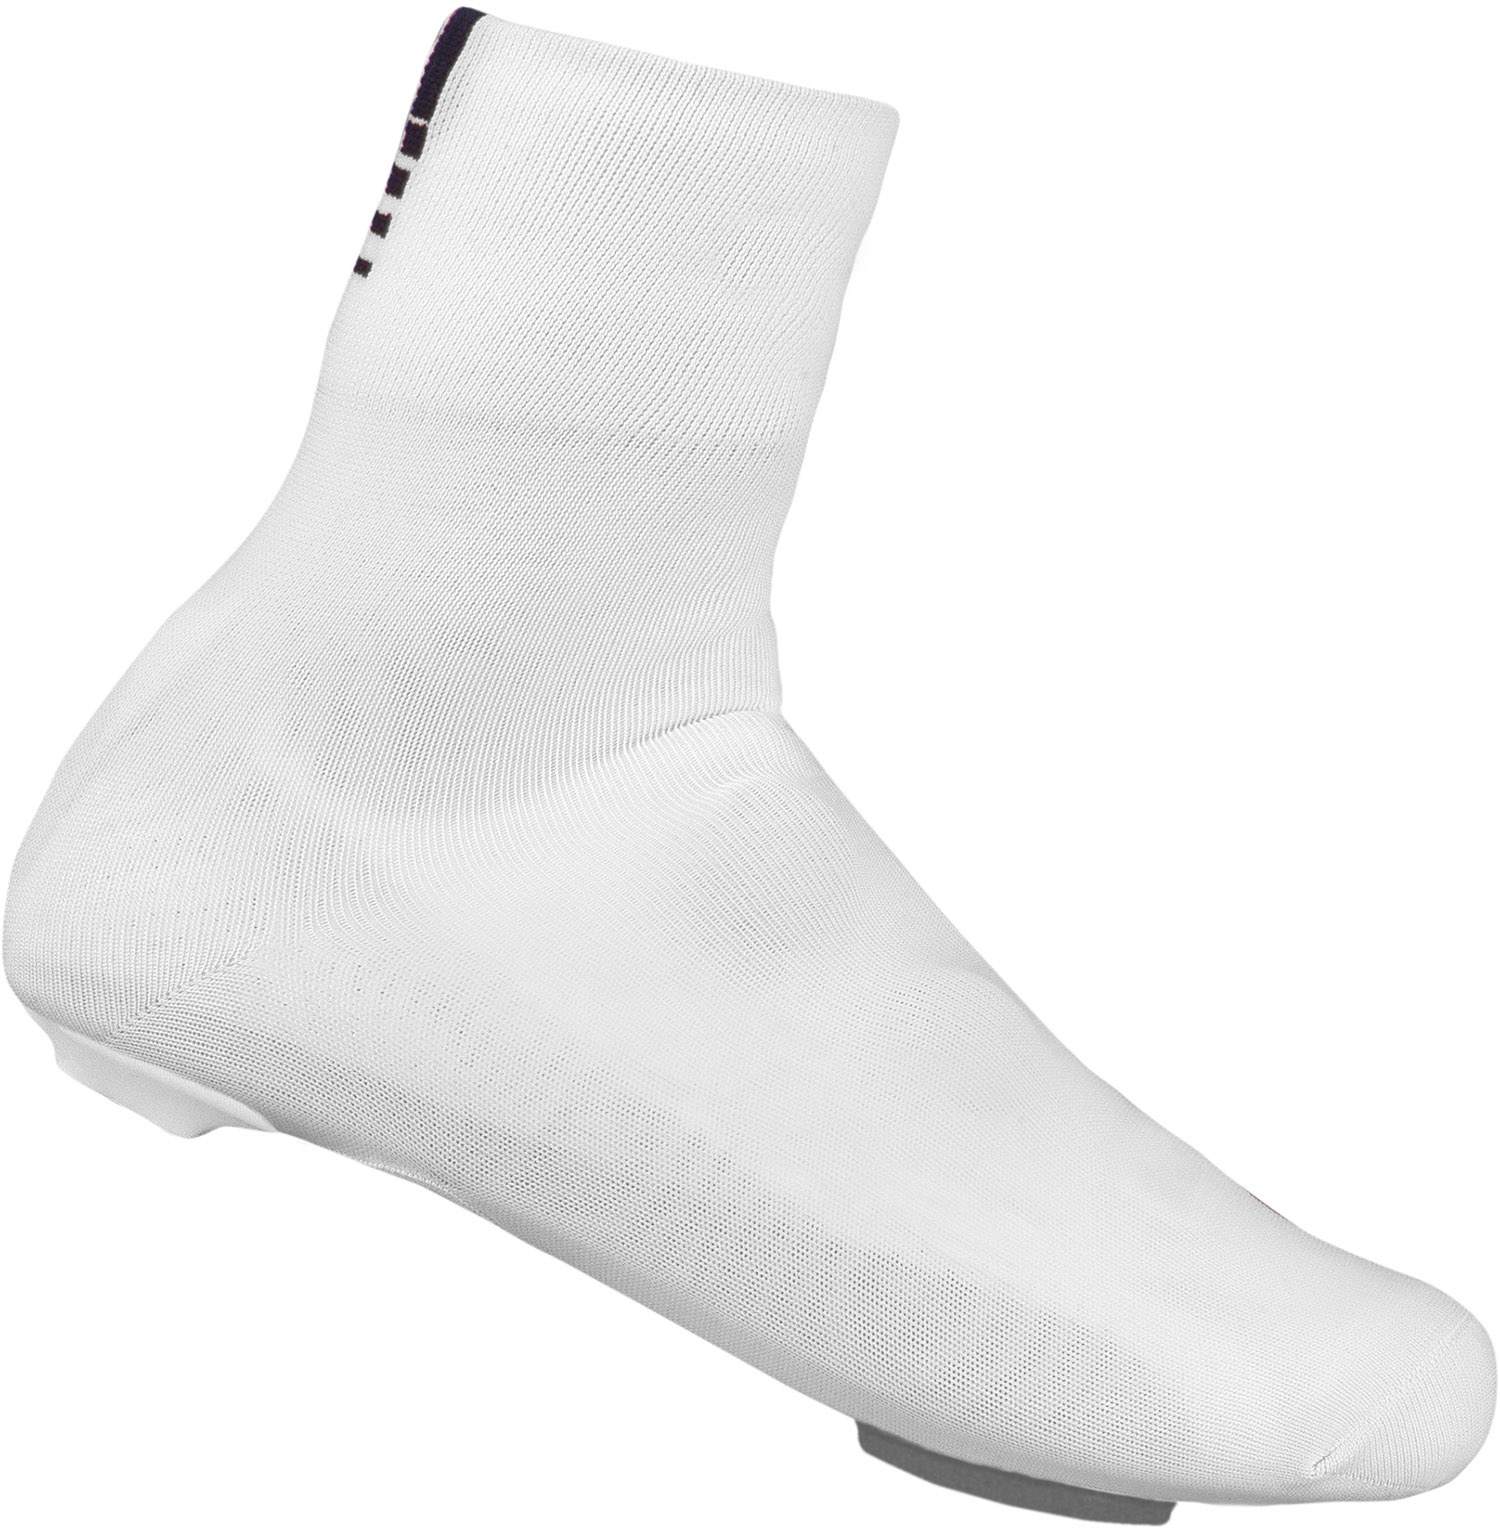 Beklædning - Skoovertræk - GripGrab Primavera Overgangs Cover Sock - Hvid